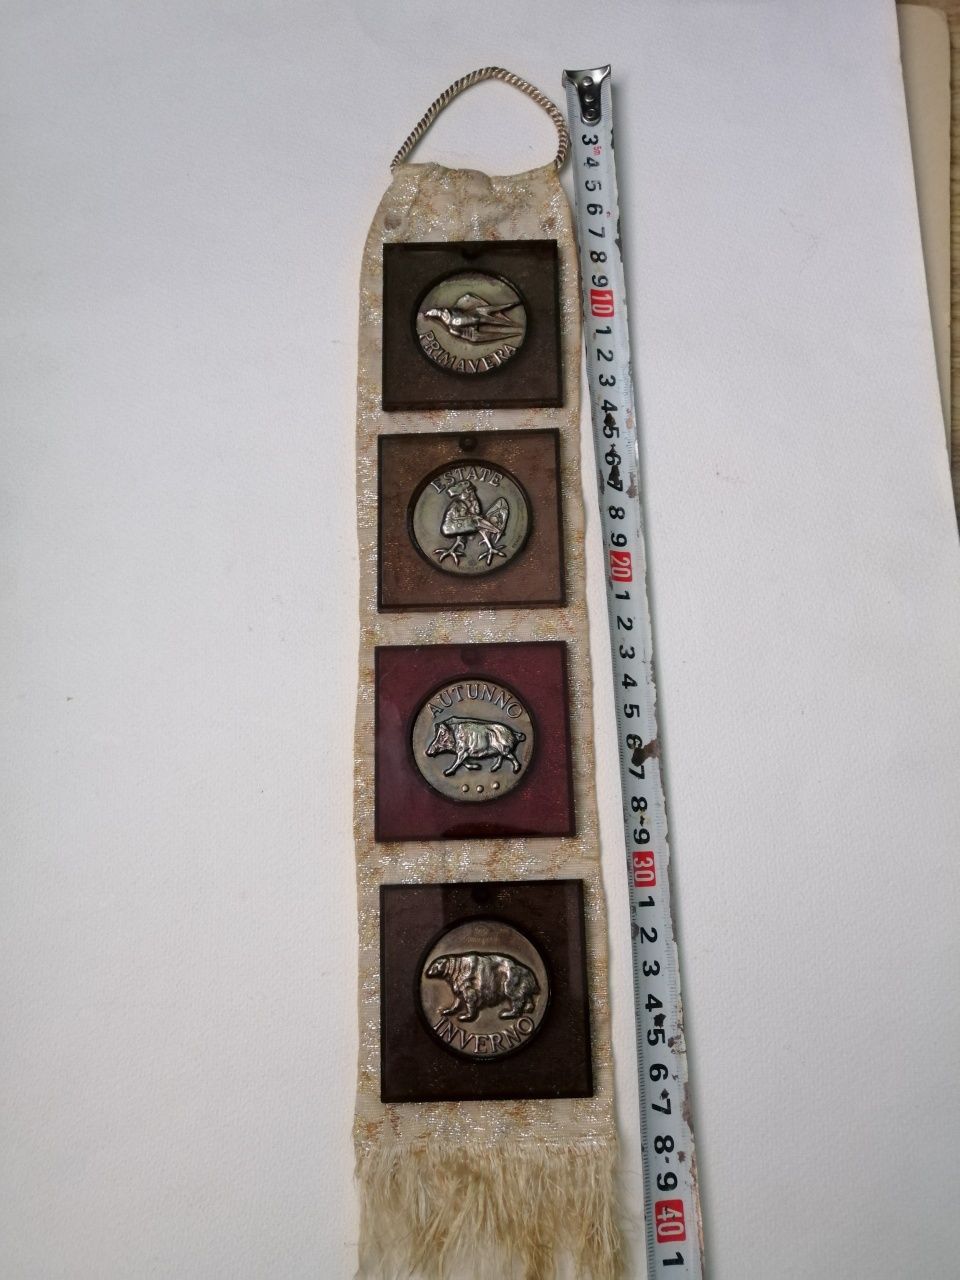 Medalie vintage vânătoare 4 anotimpuri